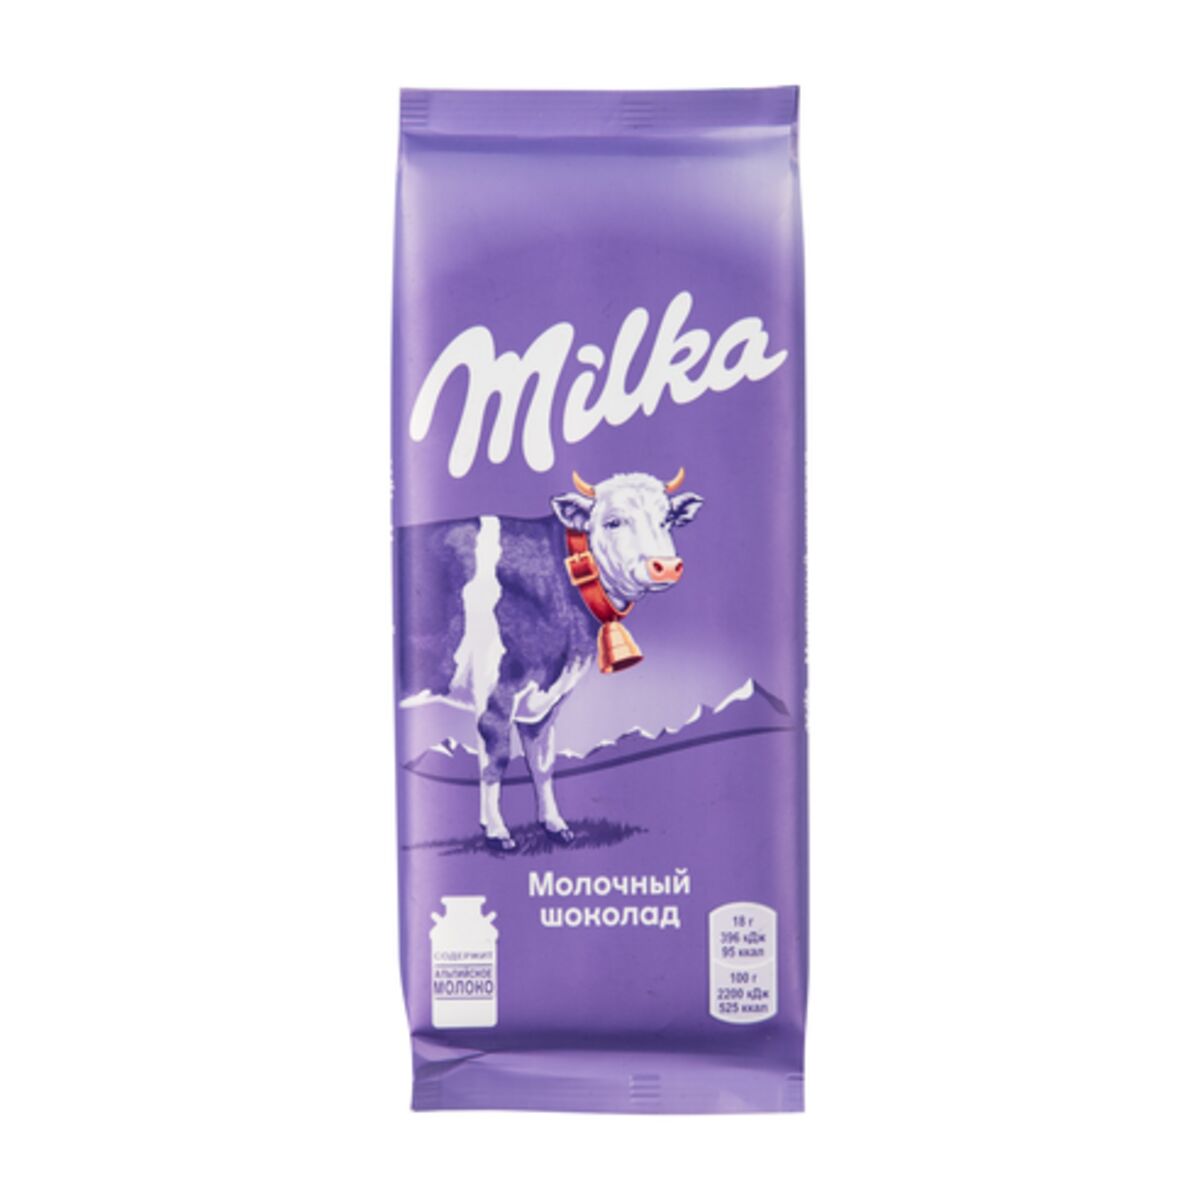 Молочный шоколад Milka - рейтинг 4,46 по отзывам экспертов ☑ Экспертиза  состава и производителя | Роскачество - 2020 год